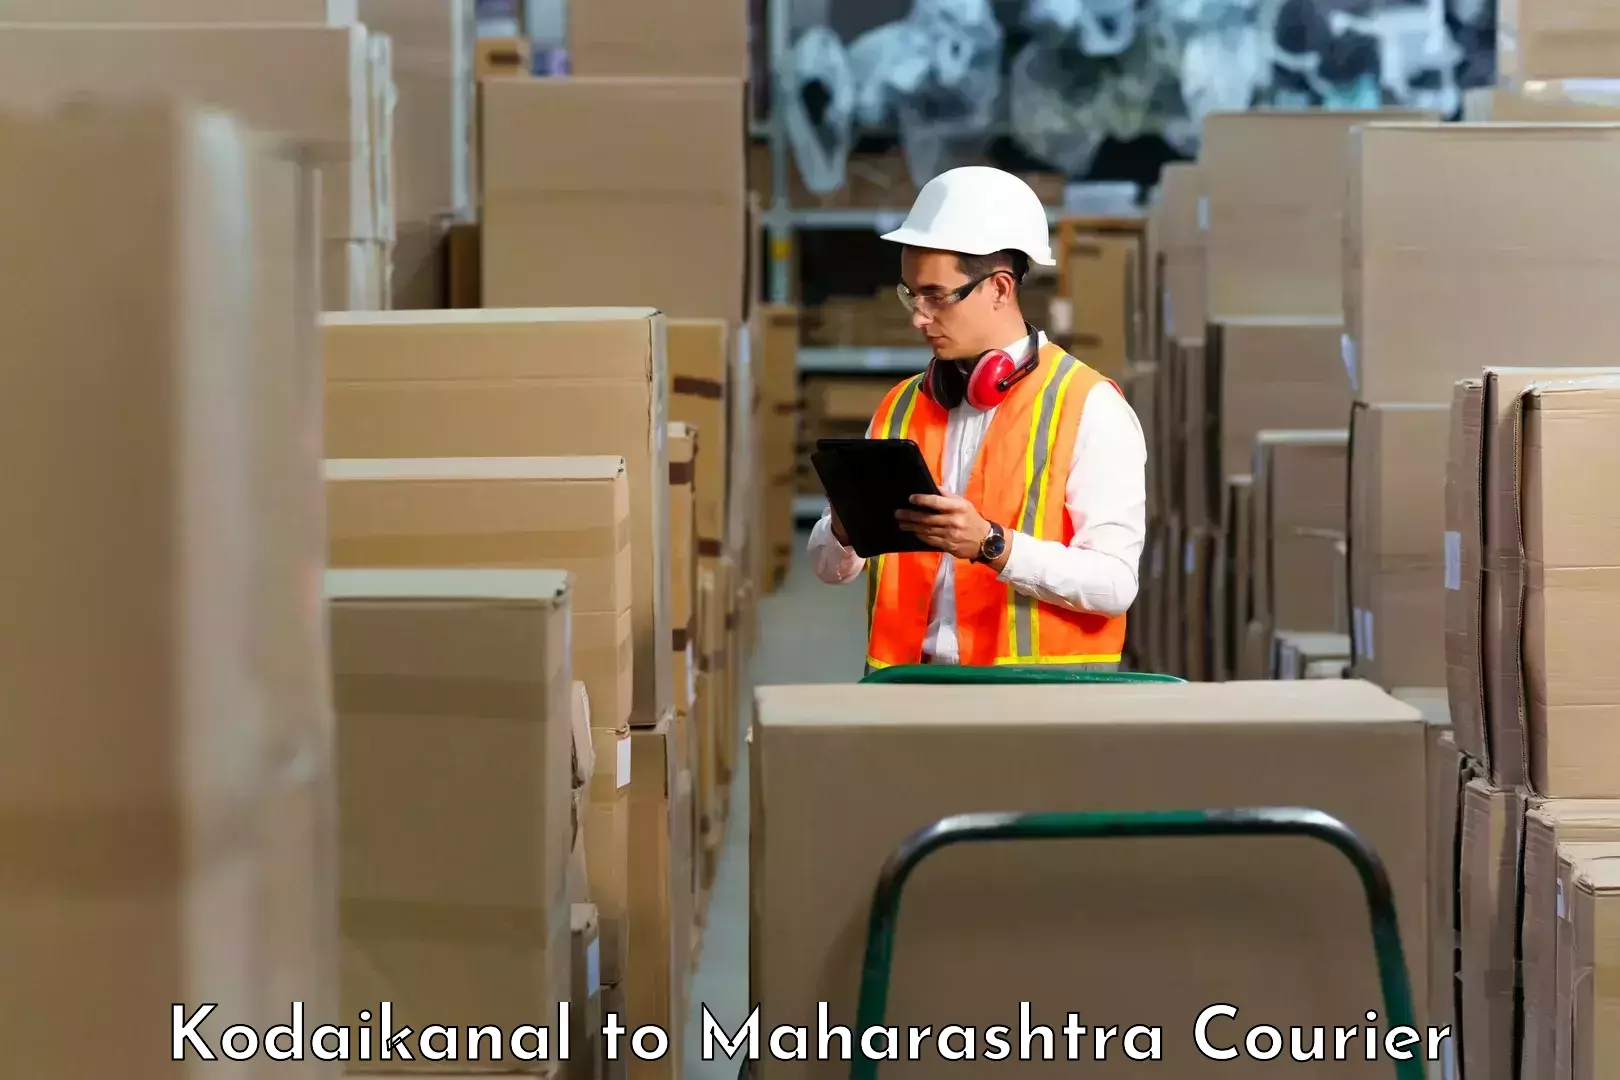 Efficient order fulfillment Kodaikanal to Maharashtra